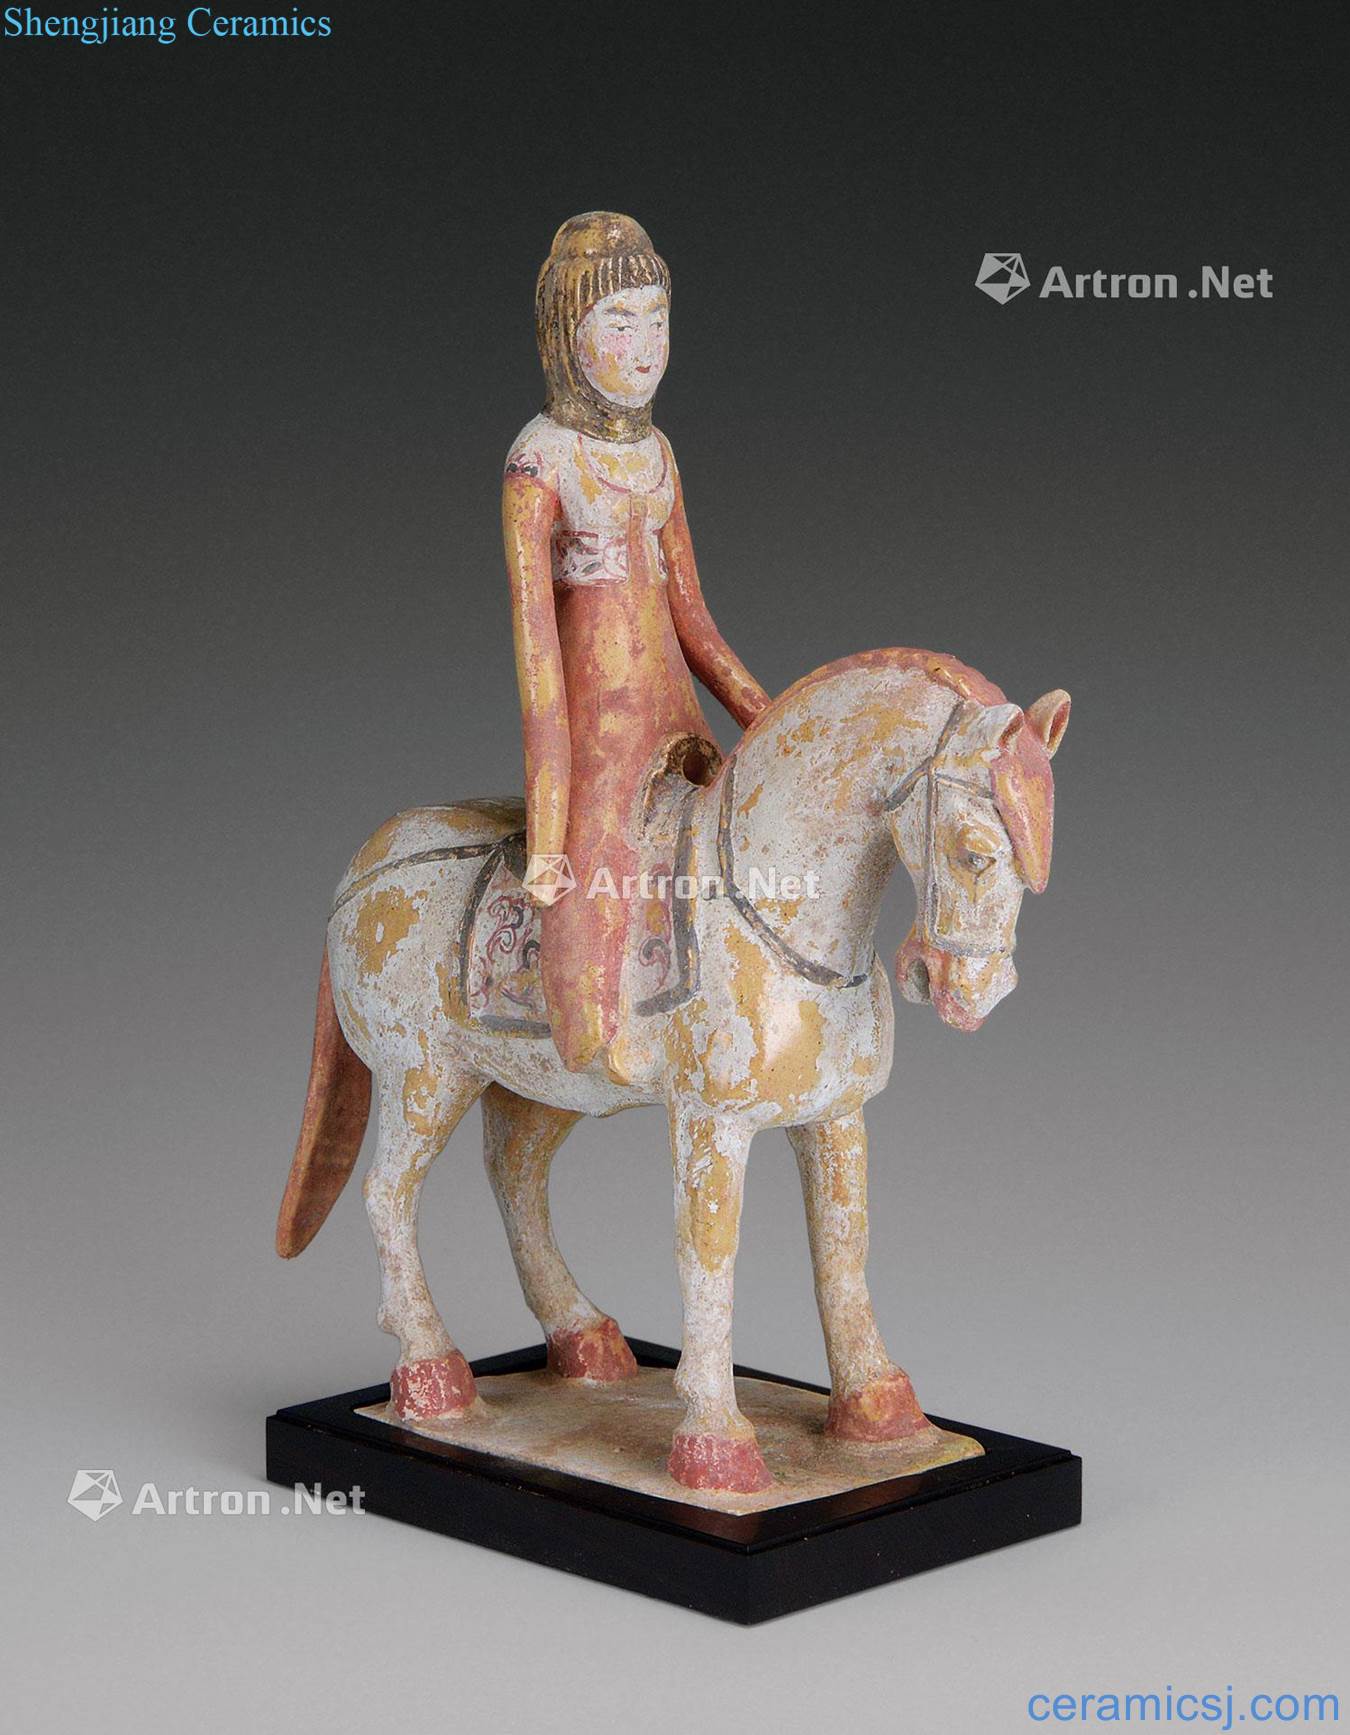 Beiqi (550-577) painted pottery lady warrior on horseback